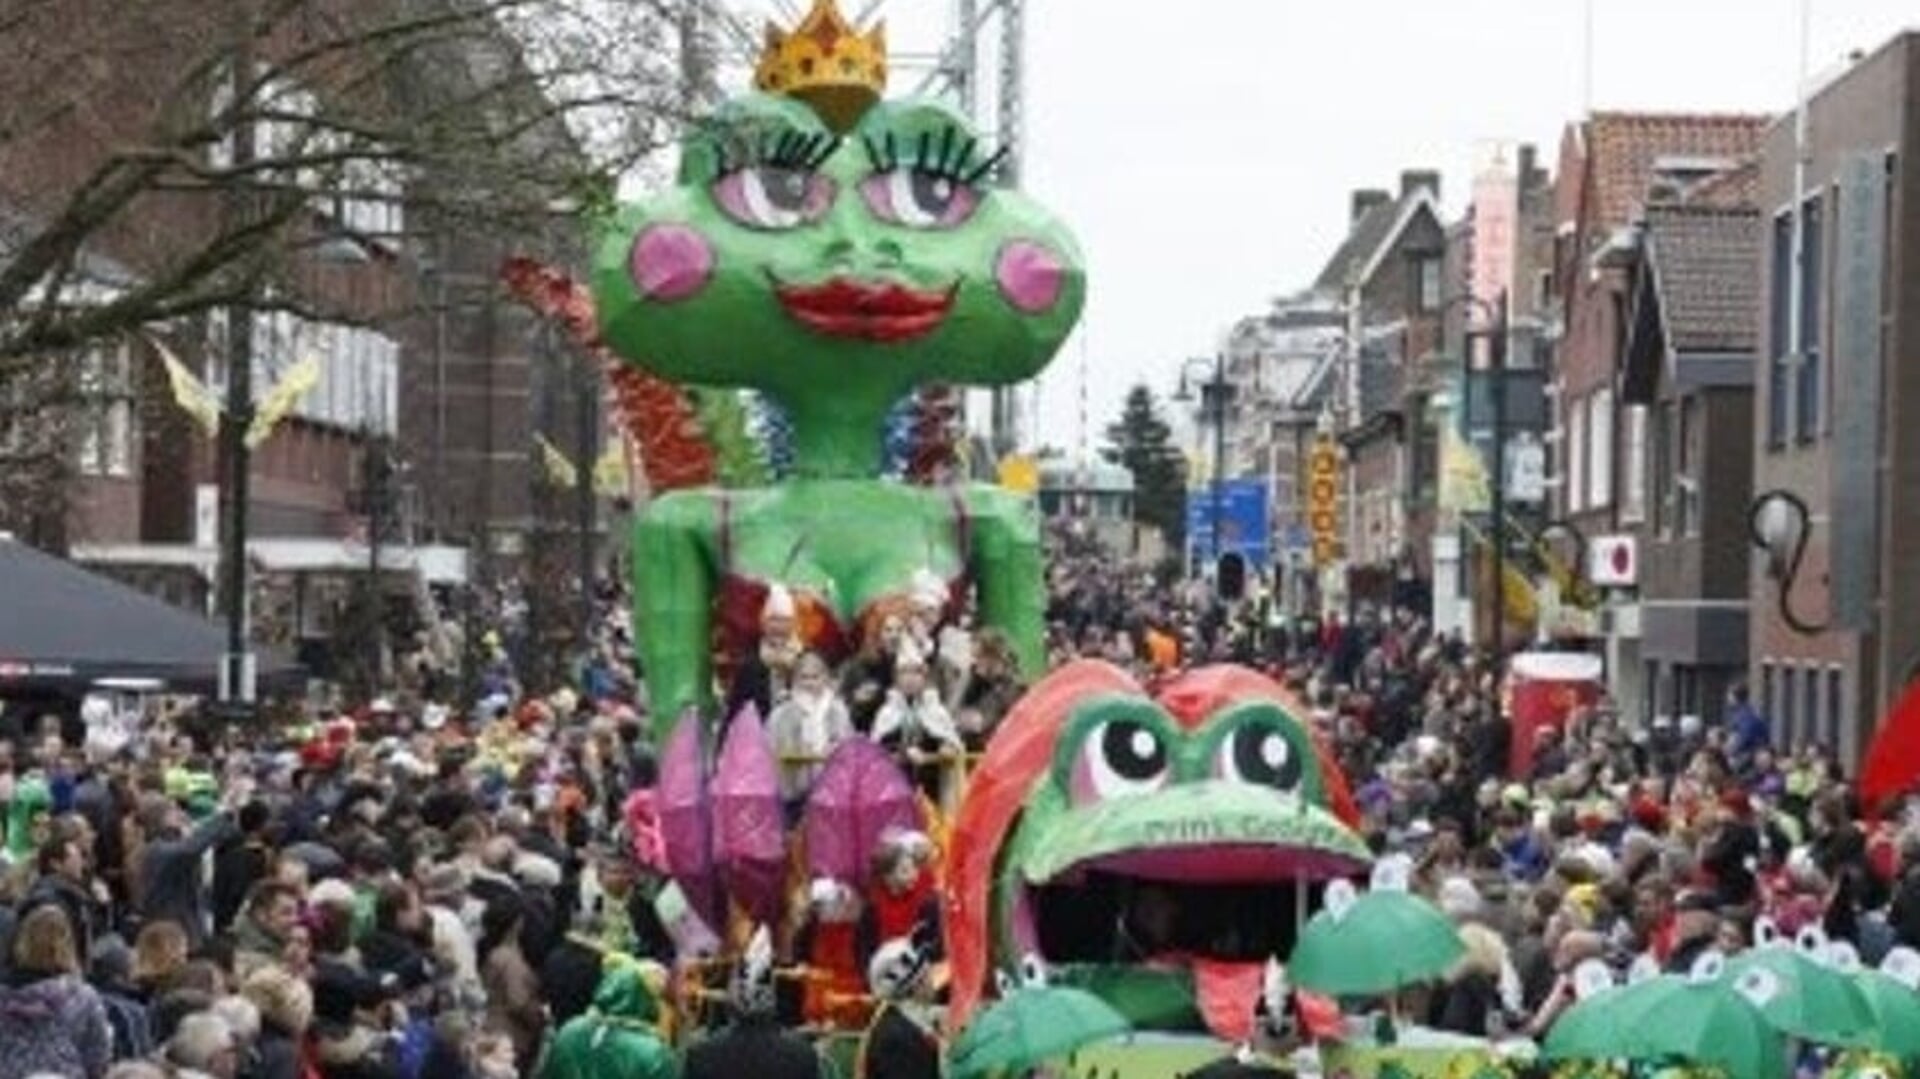 Het belooft weer een mooi carnaval te worden in 'Kwakveen'!